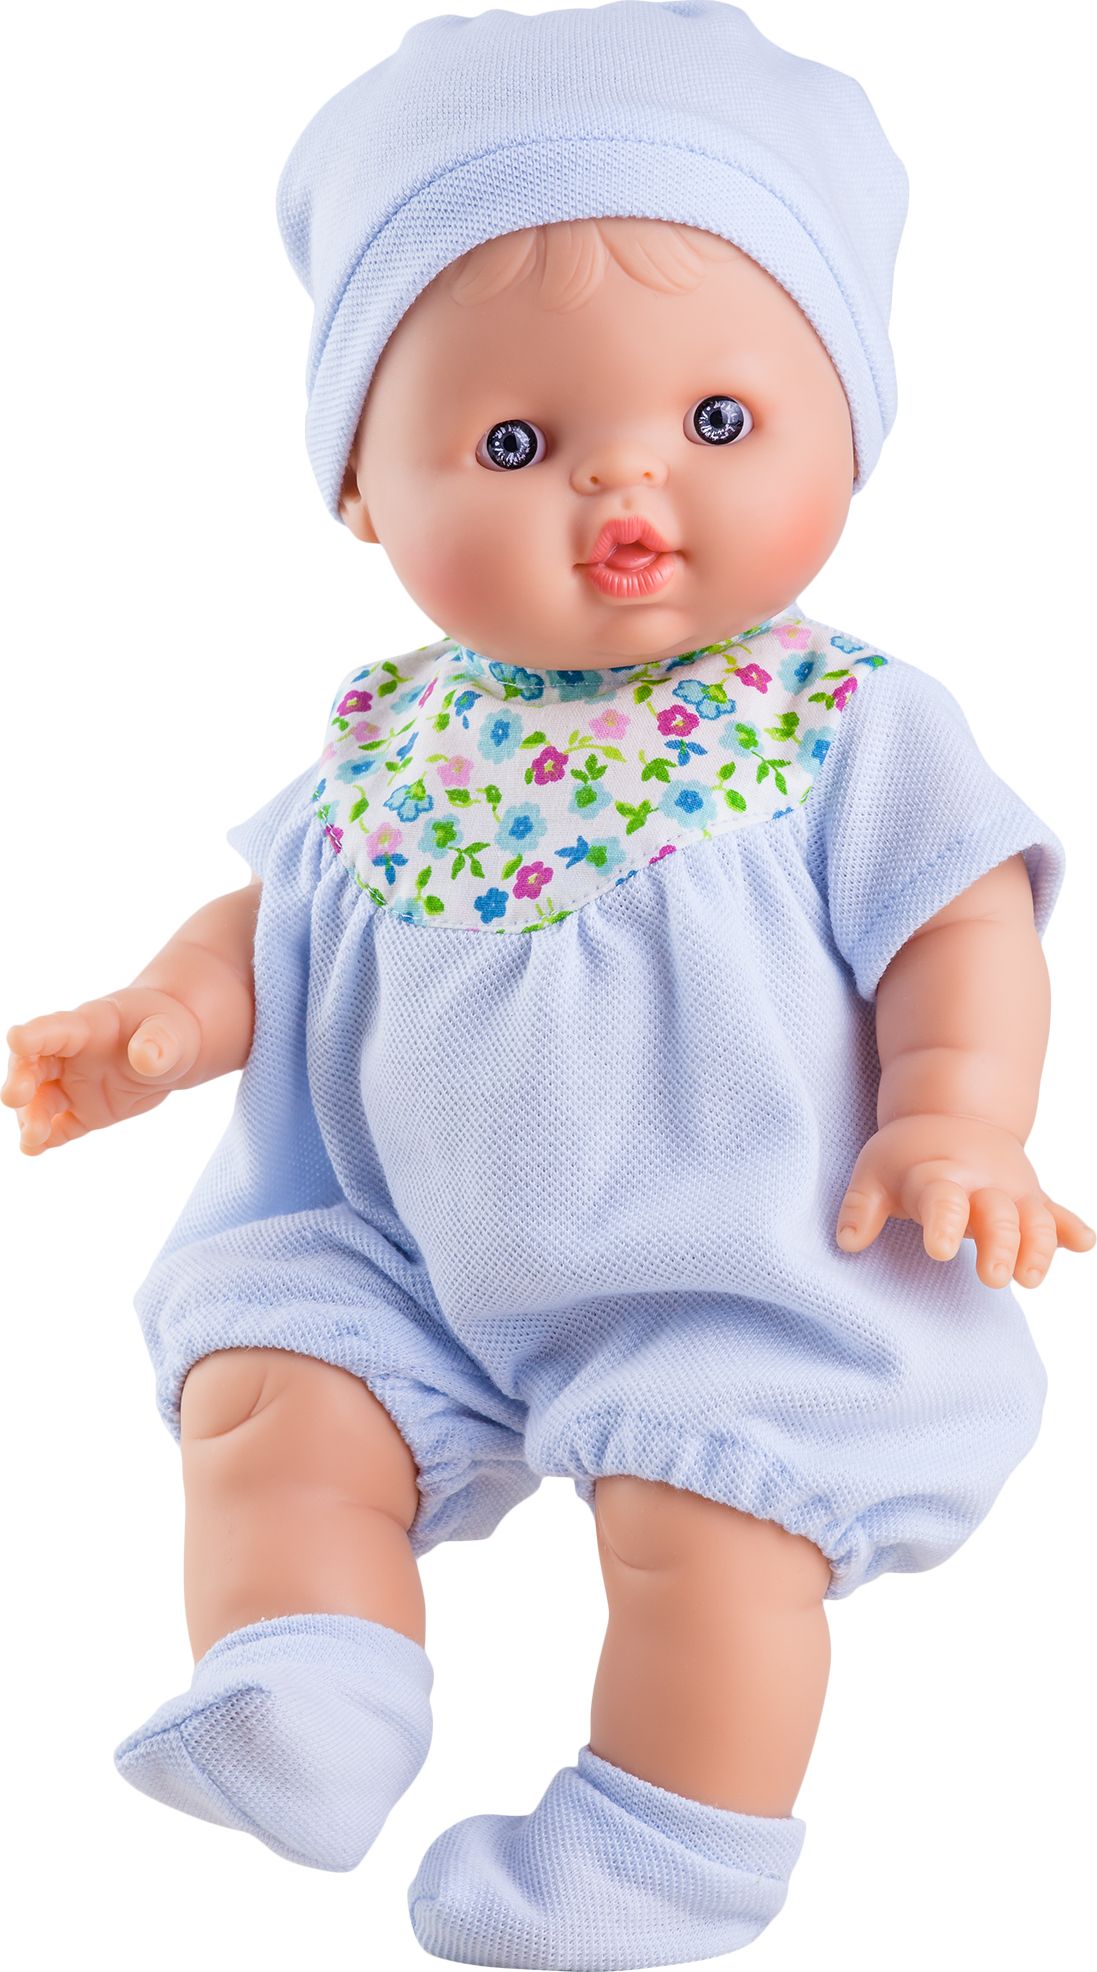 Realistická panenka  chlapeček Albert od firmy Paola Reina ze Španělska - obrázek 1